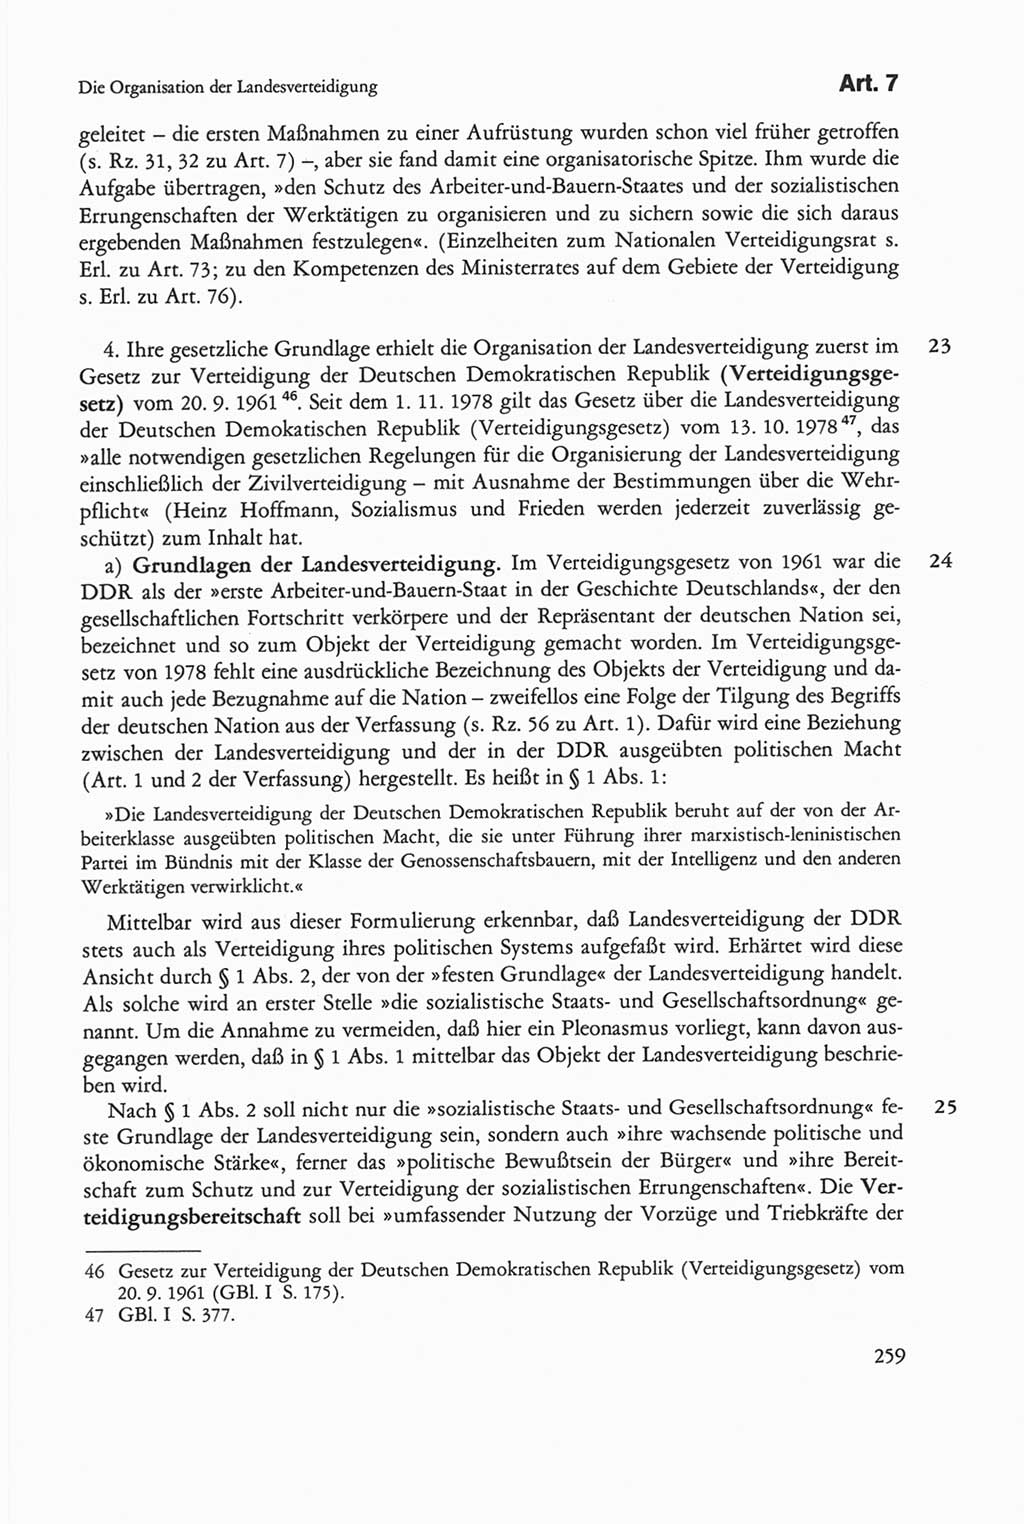 Die sozialistische Verfassung der Deutschen Demokratischen Republik (DDR), Kommentar mit einem Nachtrag 1997, Seite 259 (Soz. Verf. DDR Komm. Nachtr. 1997, S. 259)